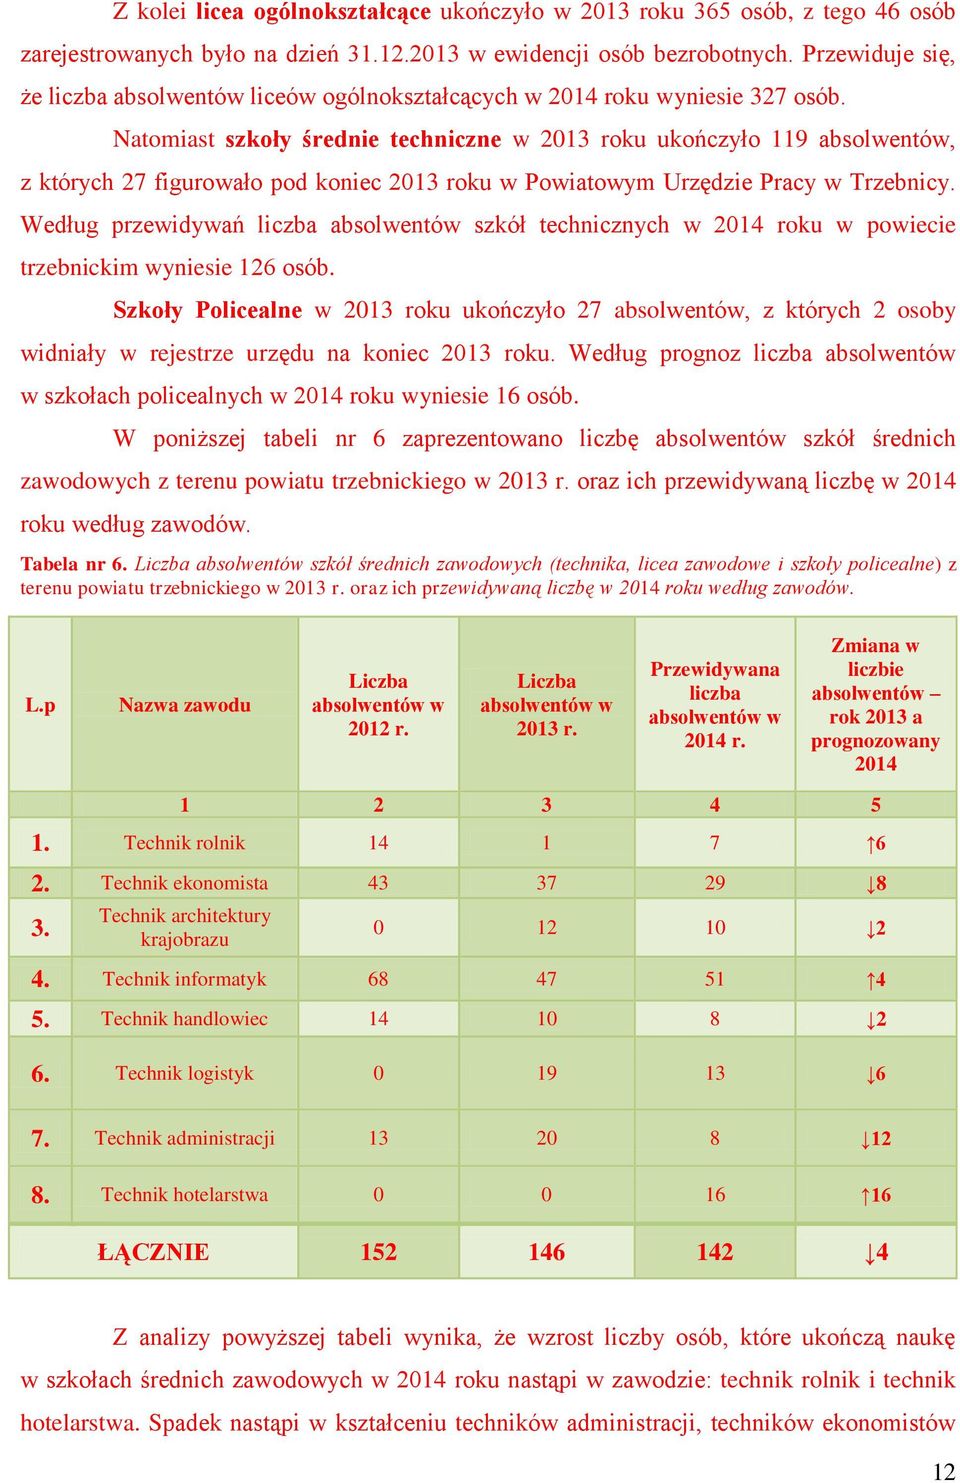 Natomiast szkoły średnie techniczne w 2013 roku ukończyło 119 absolwentów, z których 27 figurowało pod koniec 2013 roku w Powiatowym Urzędzie Pracy w Trzebnicy.